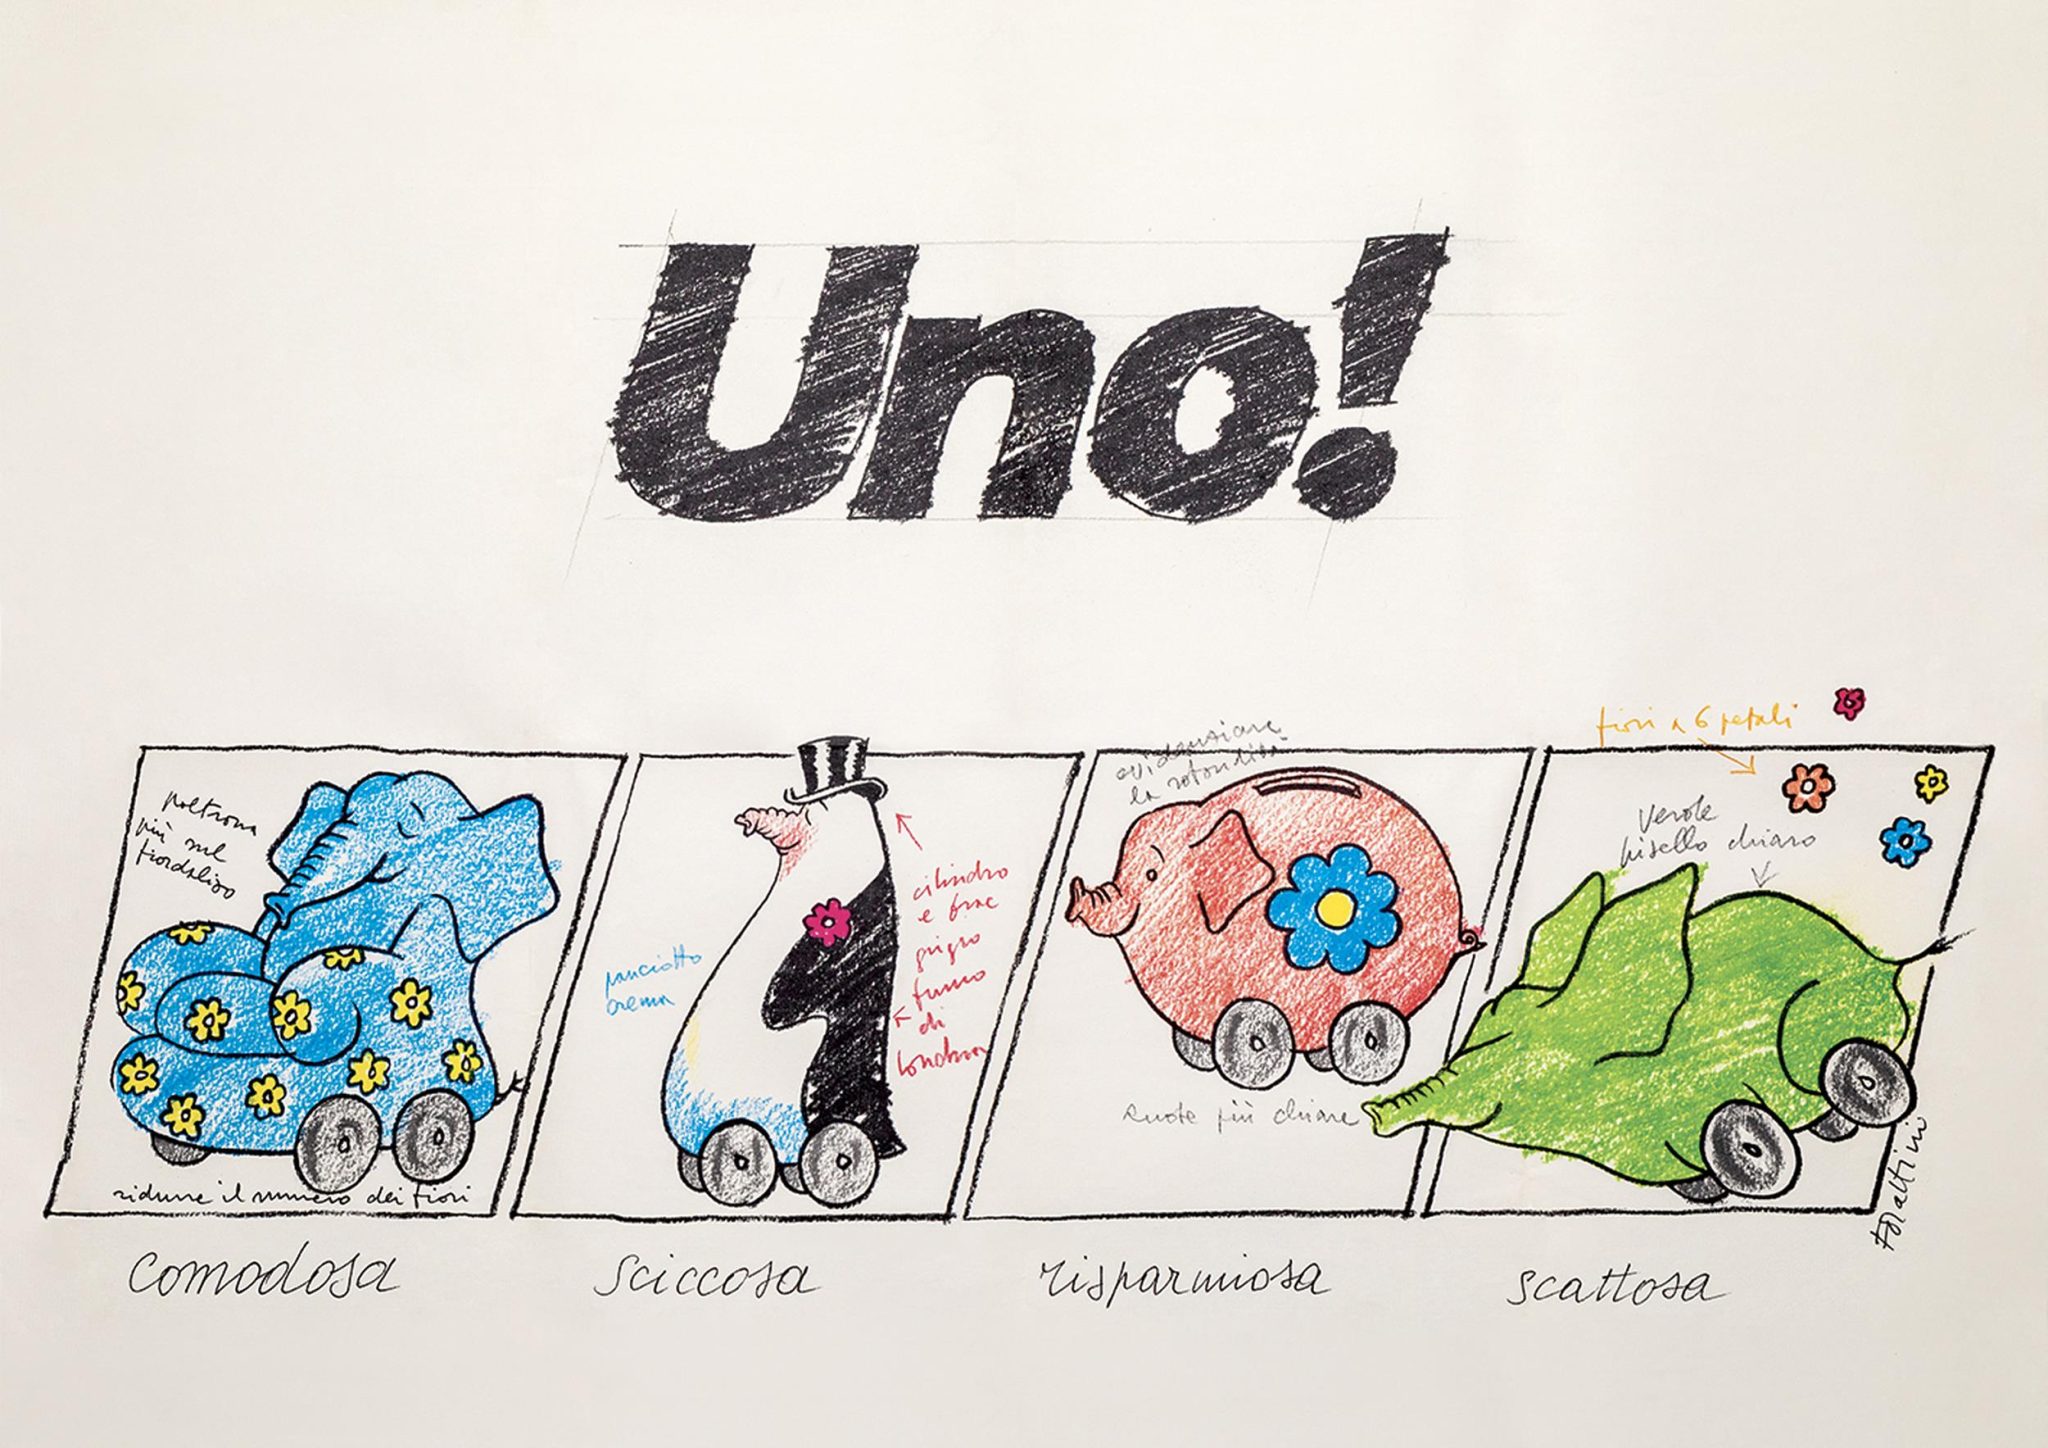 The Fiat Uno: Forattini’s “rivoluzionosa” ad campaign 40 years on